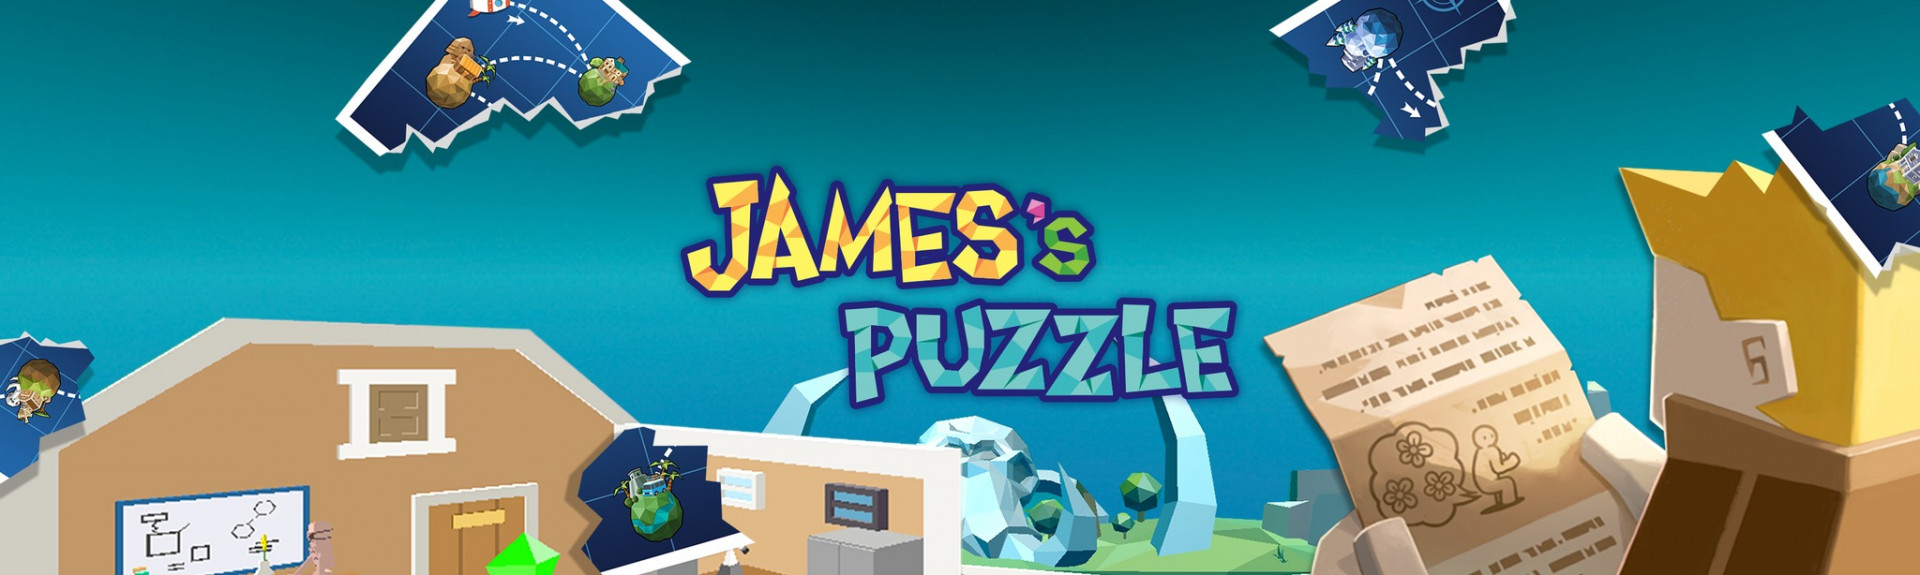 James's Puzzle